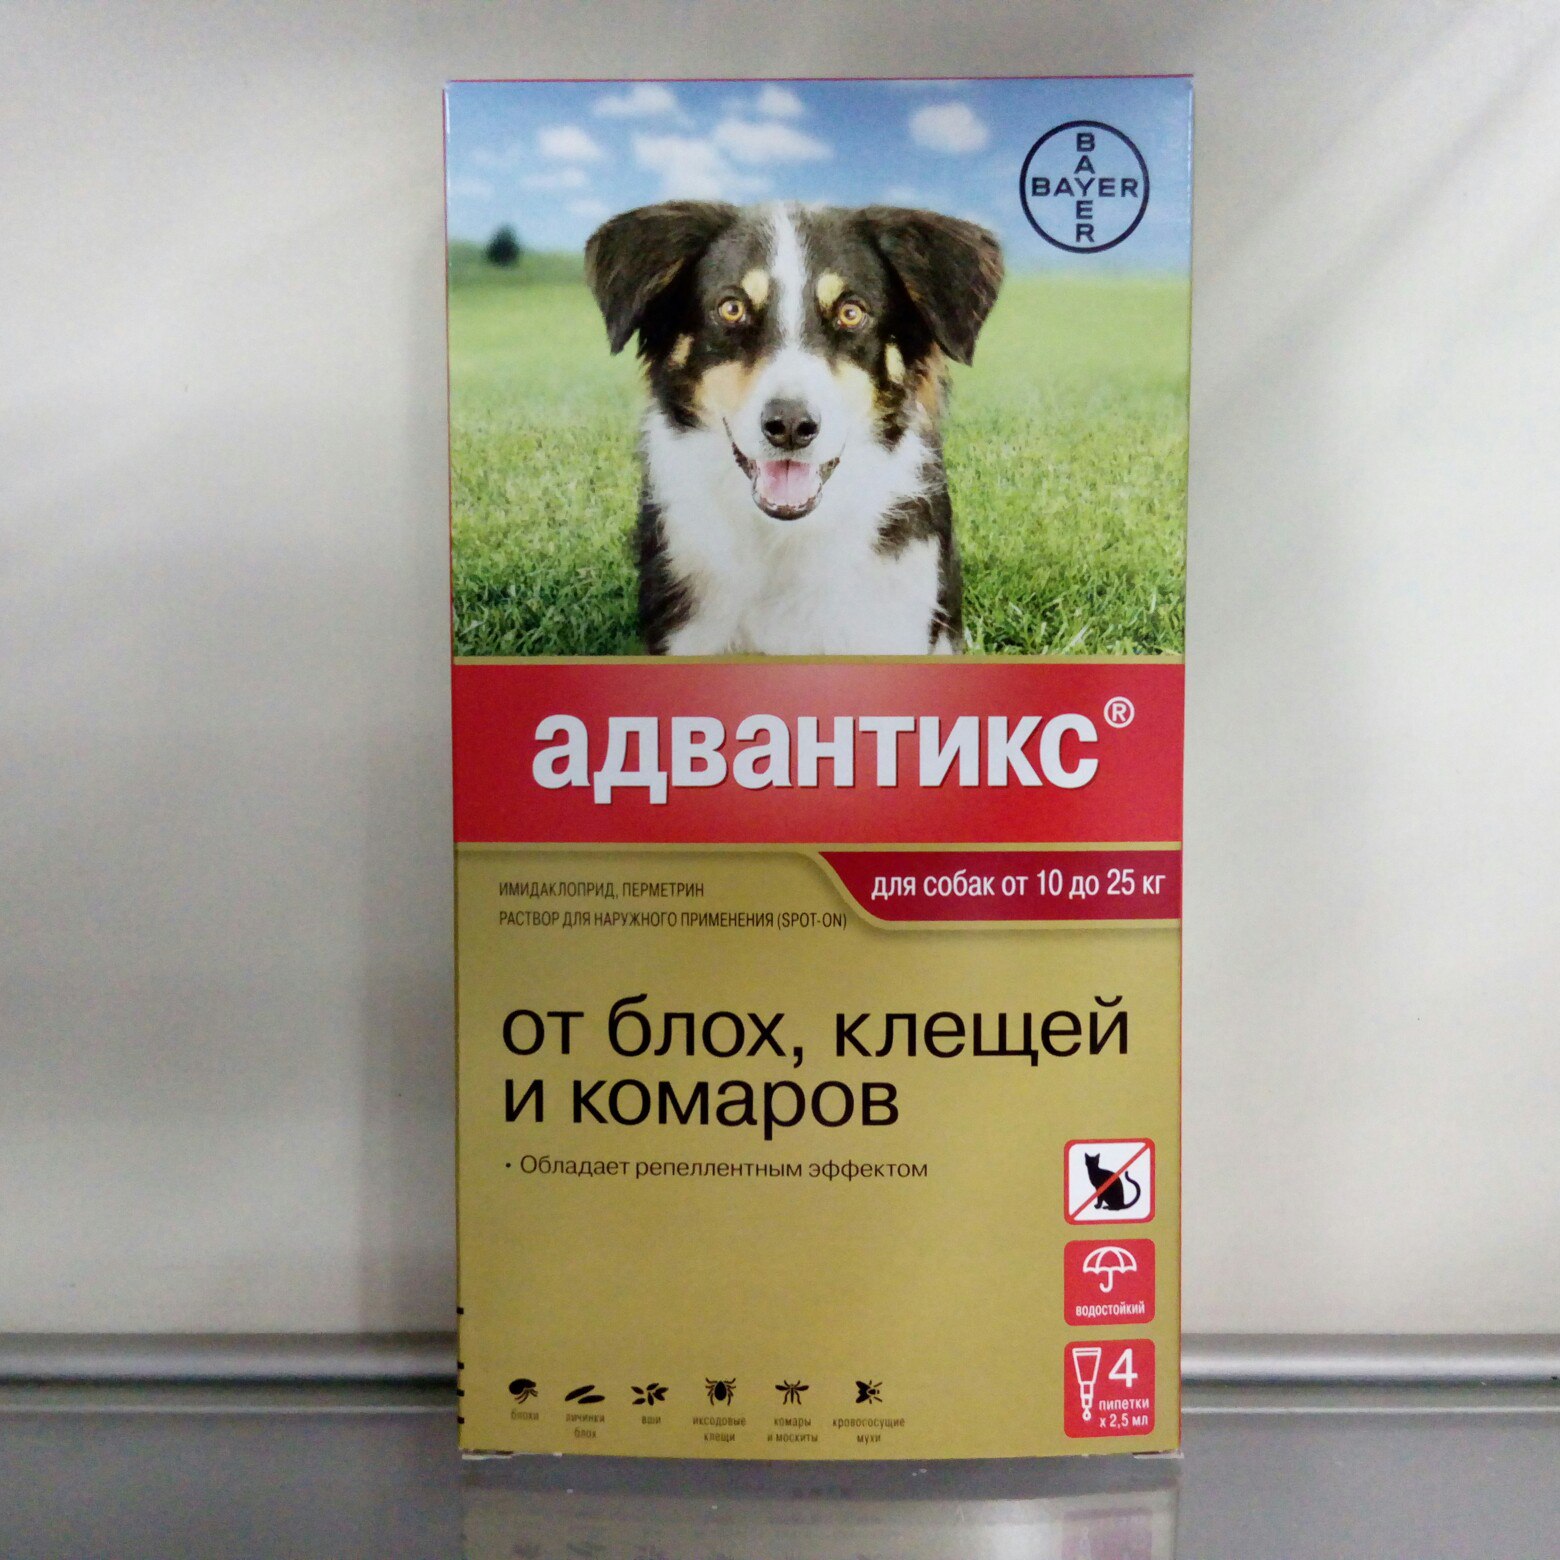 Адвантикс для собак: состав, инструкция, как применять, аналоги
адвантикс для собак: состав, инструкция, как применять, аналоги